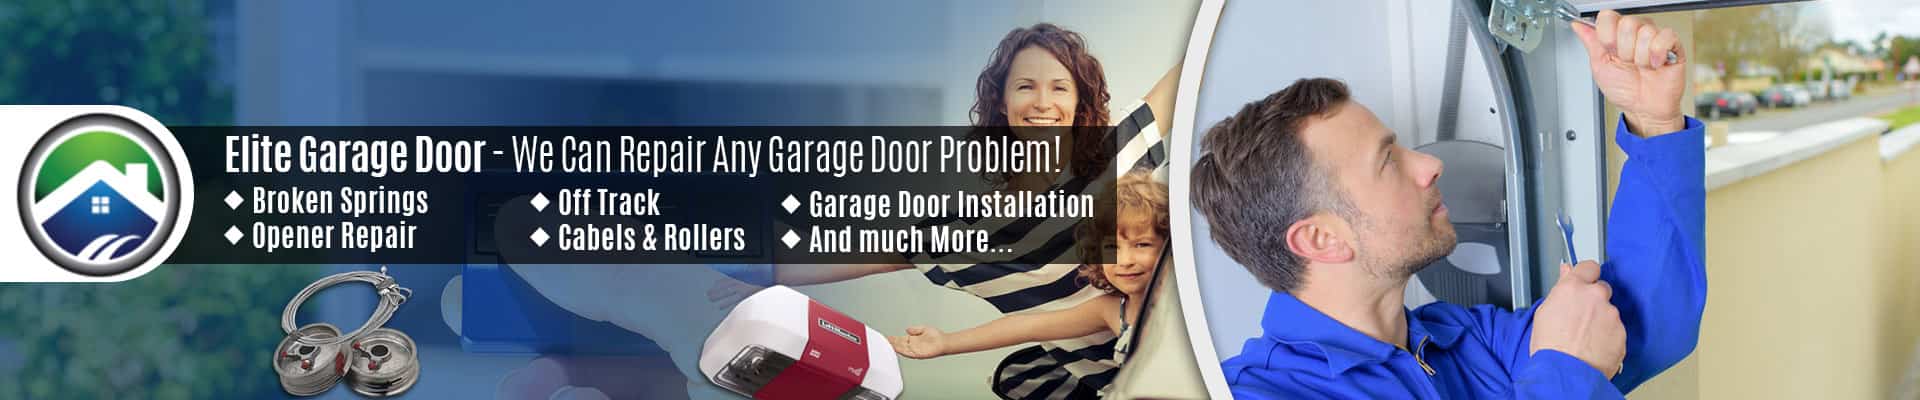 Garage Door Repair Service Arlington – Elite Garage Door of Granite Falls